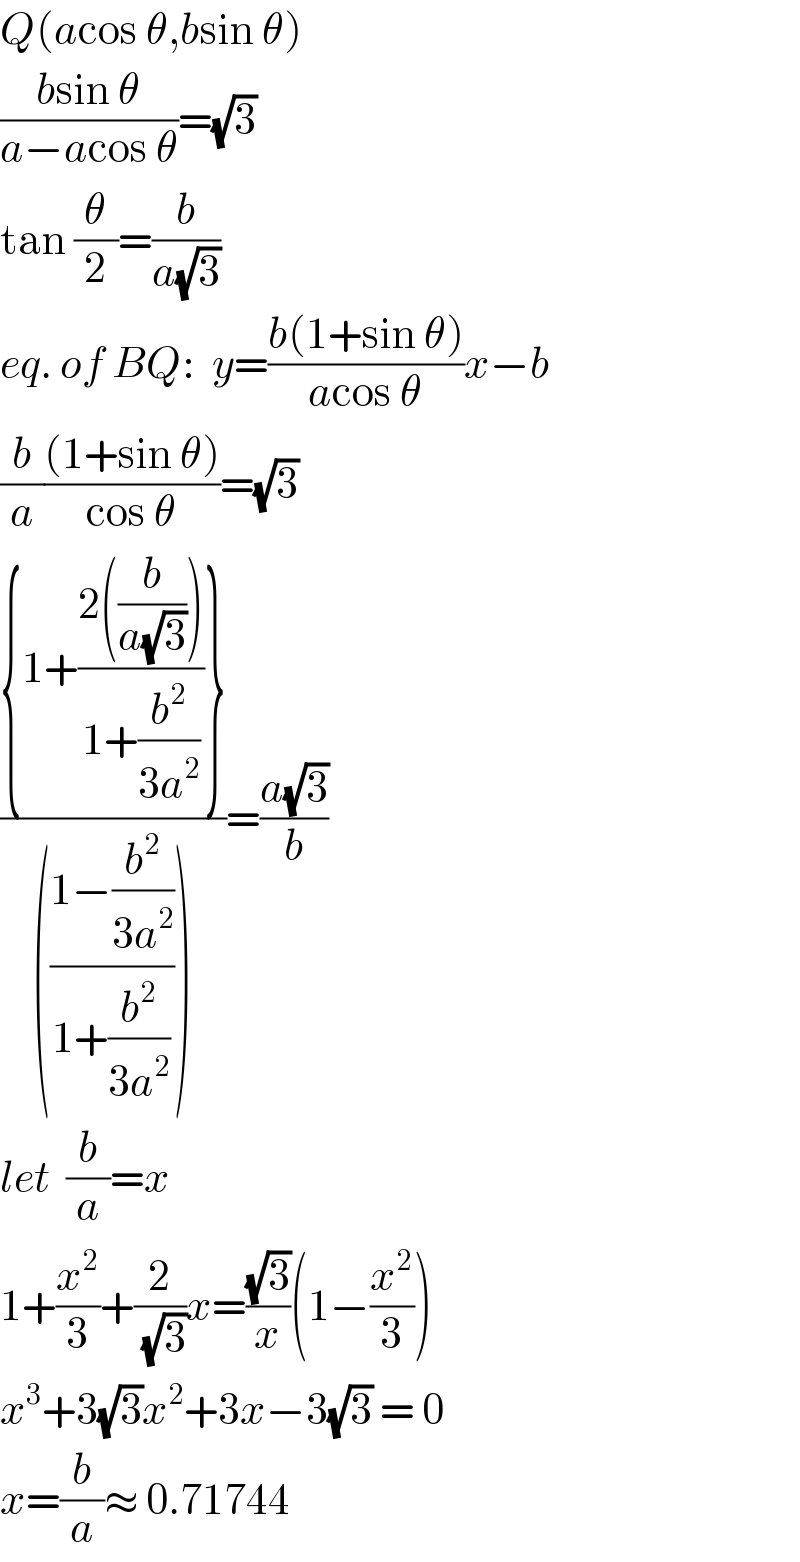 Q(acos θ,bsin θ)  ((bsin θ)/(a−acos θ))=(√3)  tan (θ/2)=(b/(a(√3)))  eq. of BQ:  y=((b(1+sin θ))/(acos θ))x−b  (b/a)(((1+sin θ))/(cos θ))=(√3)  (({1+((2((b/(a(√3)))))/(1+(b^2 /(3a^2 ))))})/((((1−(b^2 /(3a^2 )))/(1+(b^2 /(3a^2 )))))))=((a(√3))/b)  let  (b/a)=x  1+(x^2 /3)+(2/(√3))x=((√3)/x)(1−(x^2 /3))  x^3 +3(√3)x^2 +3x−3(√3) = 0  x=(b/a)≈ 0.71744  